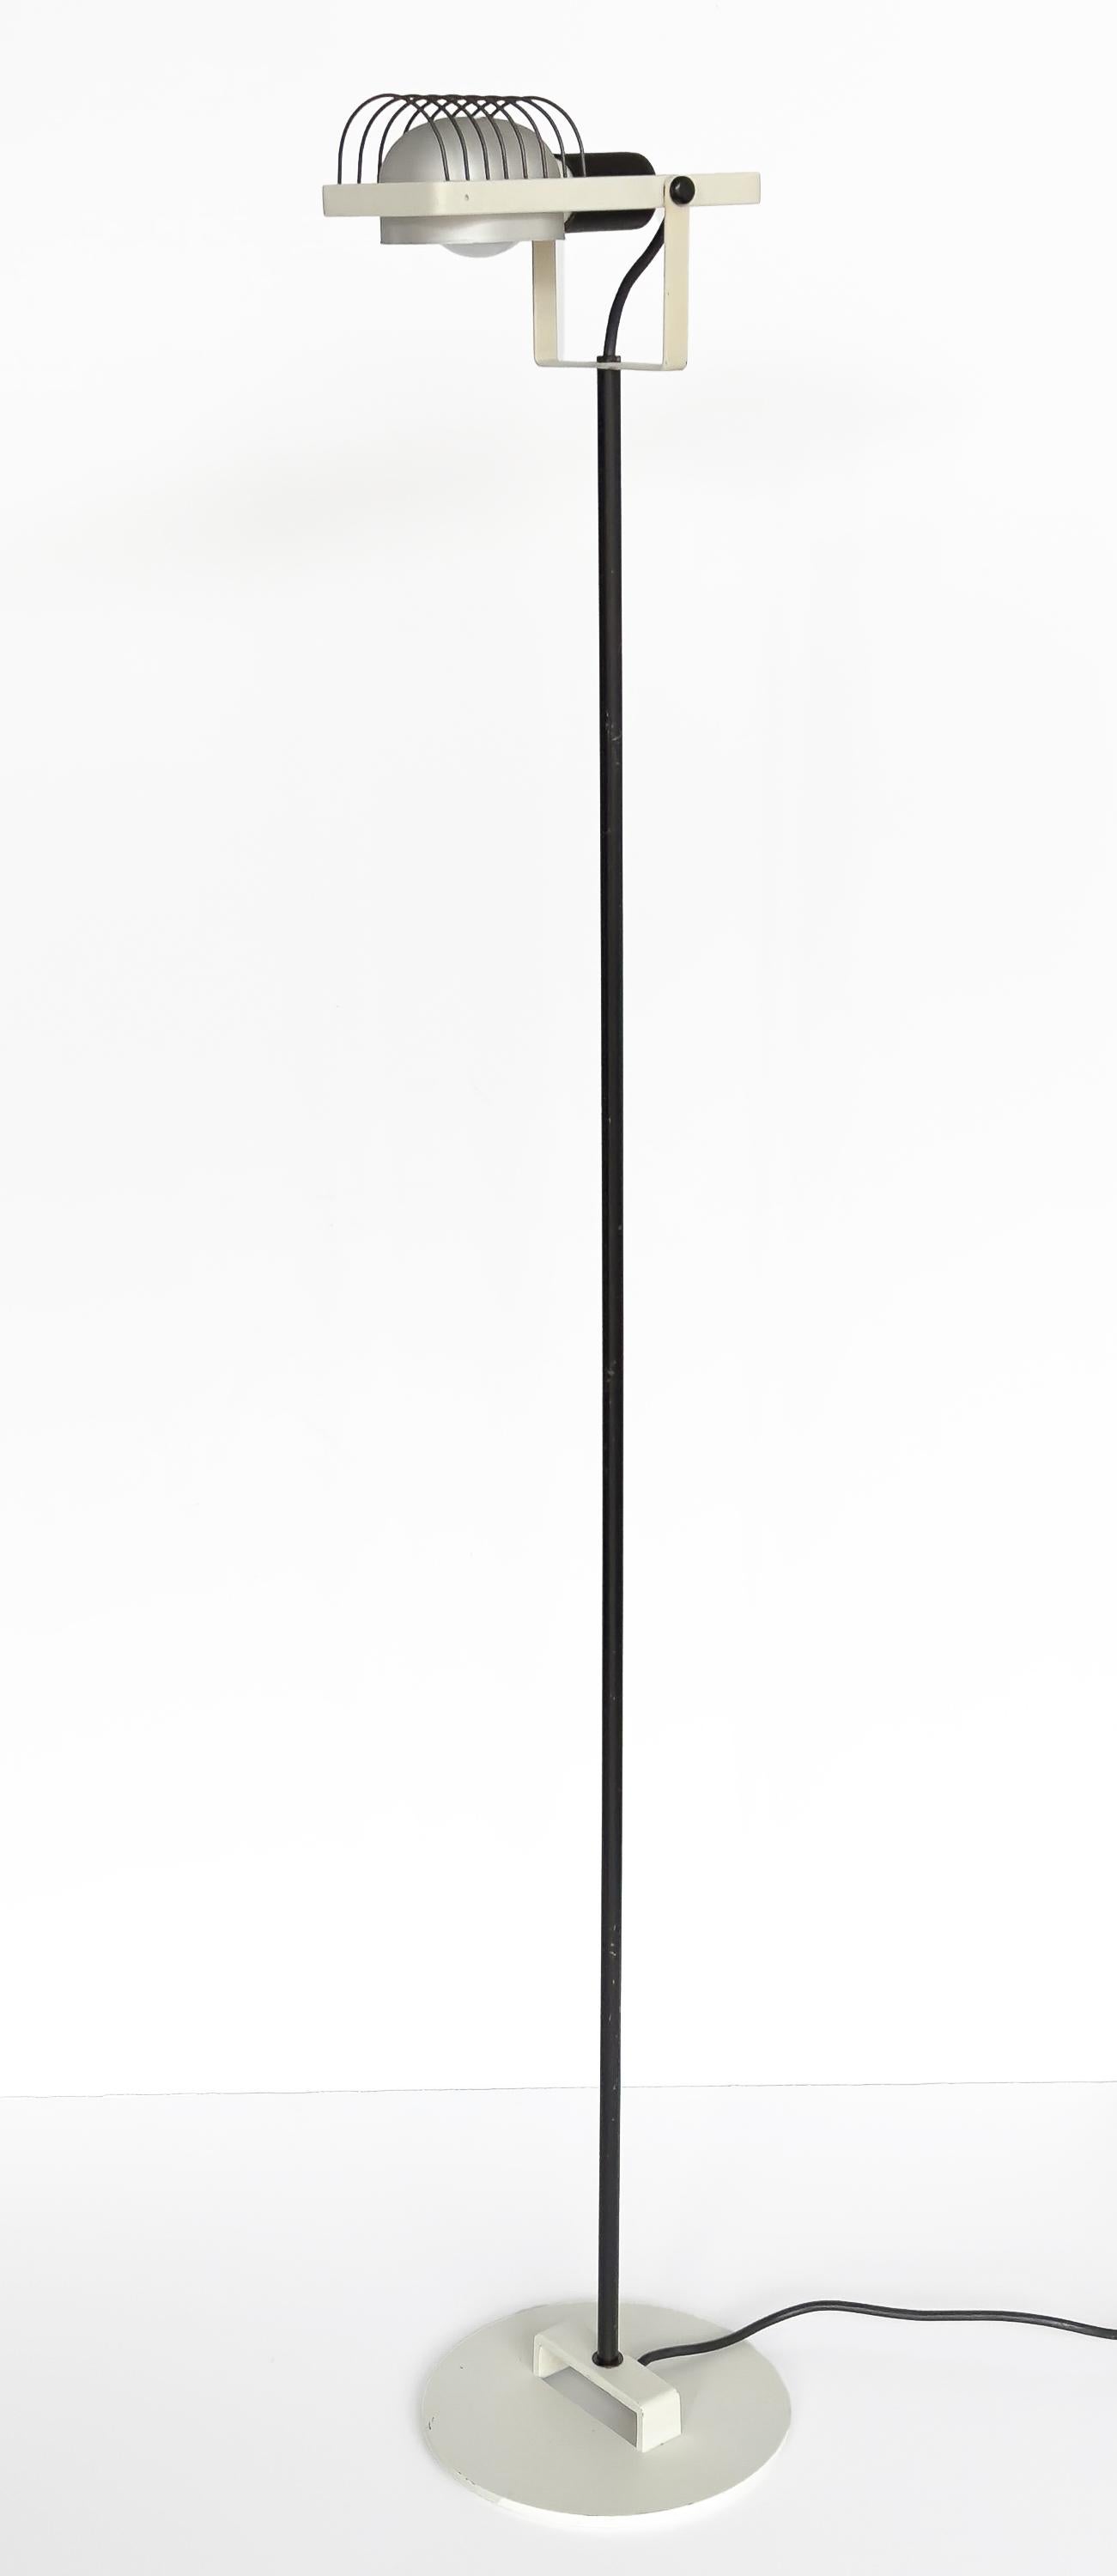 Eine schwarz-weiße Sintesi Terra Stehleuchte von Ernesto Gismodi für Artemide, Italien um 1970.  Diese postmoderne Stehleuchte hat einen weiß emaillierten Metallsockel/Lampenkopf und einen schwarz emaillierten Schaft und ein Käfiggehäuse für die